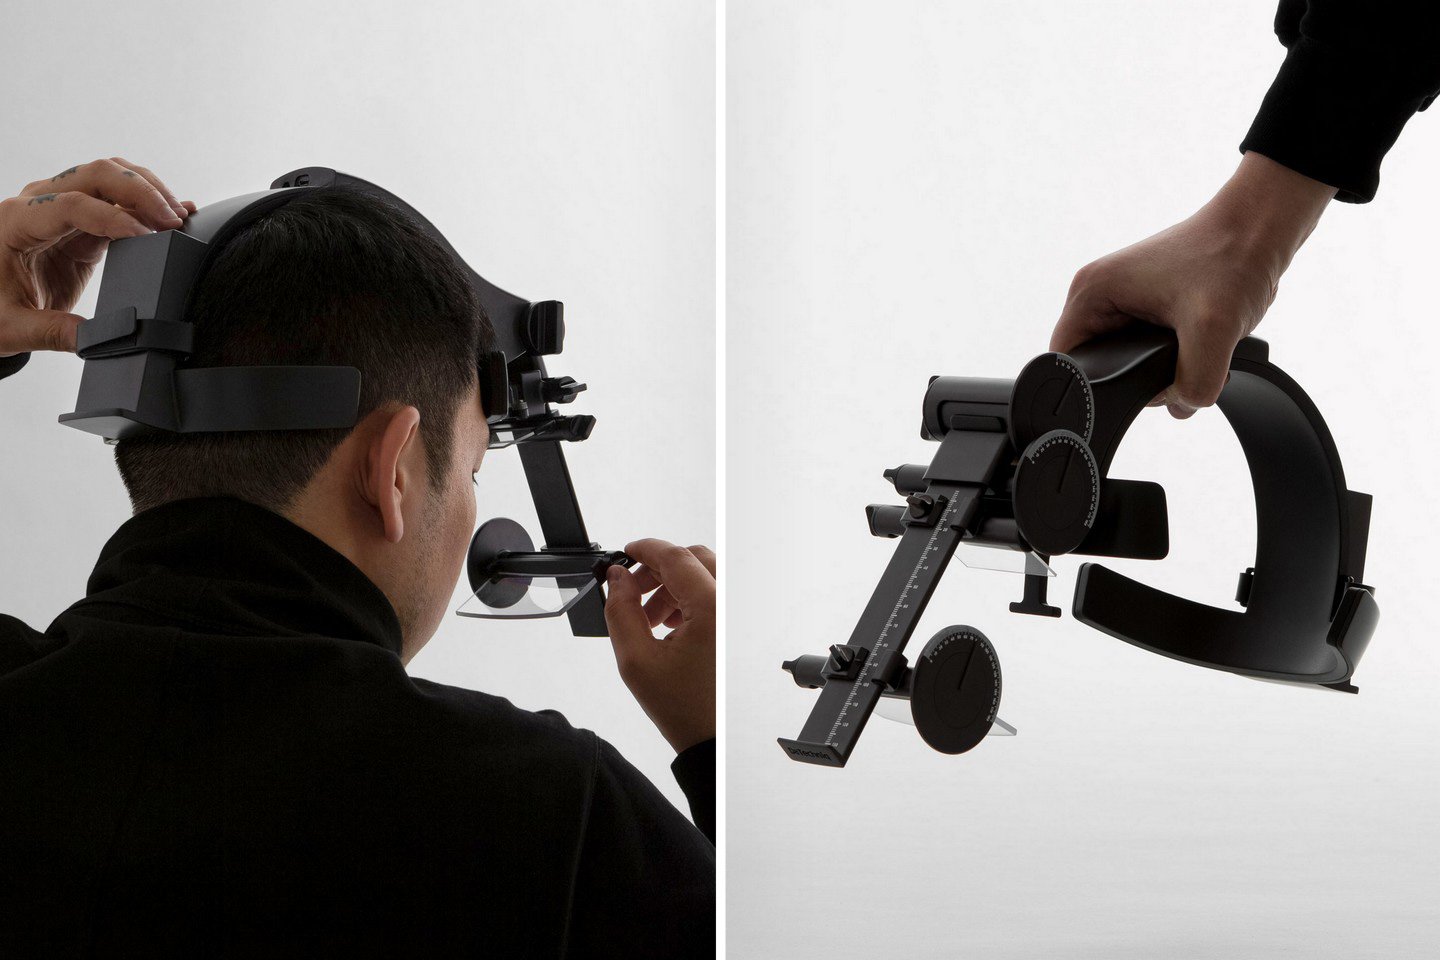 El instrumento de medición AR fue diseñado para ayudar a hacer pantallas de realidad aumentada mejores y ergonómicas